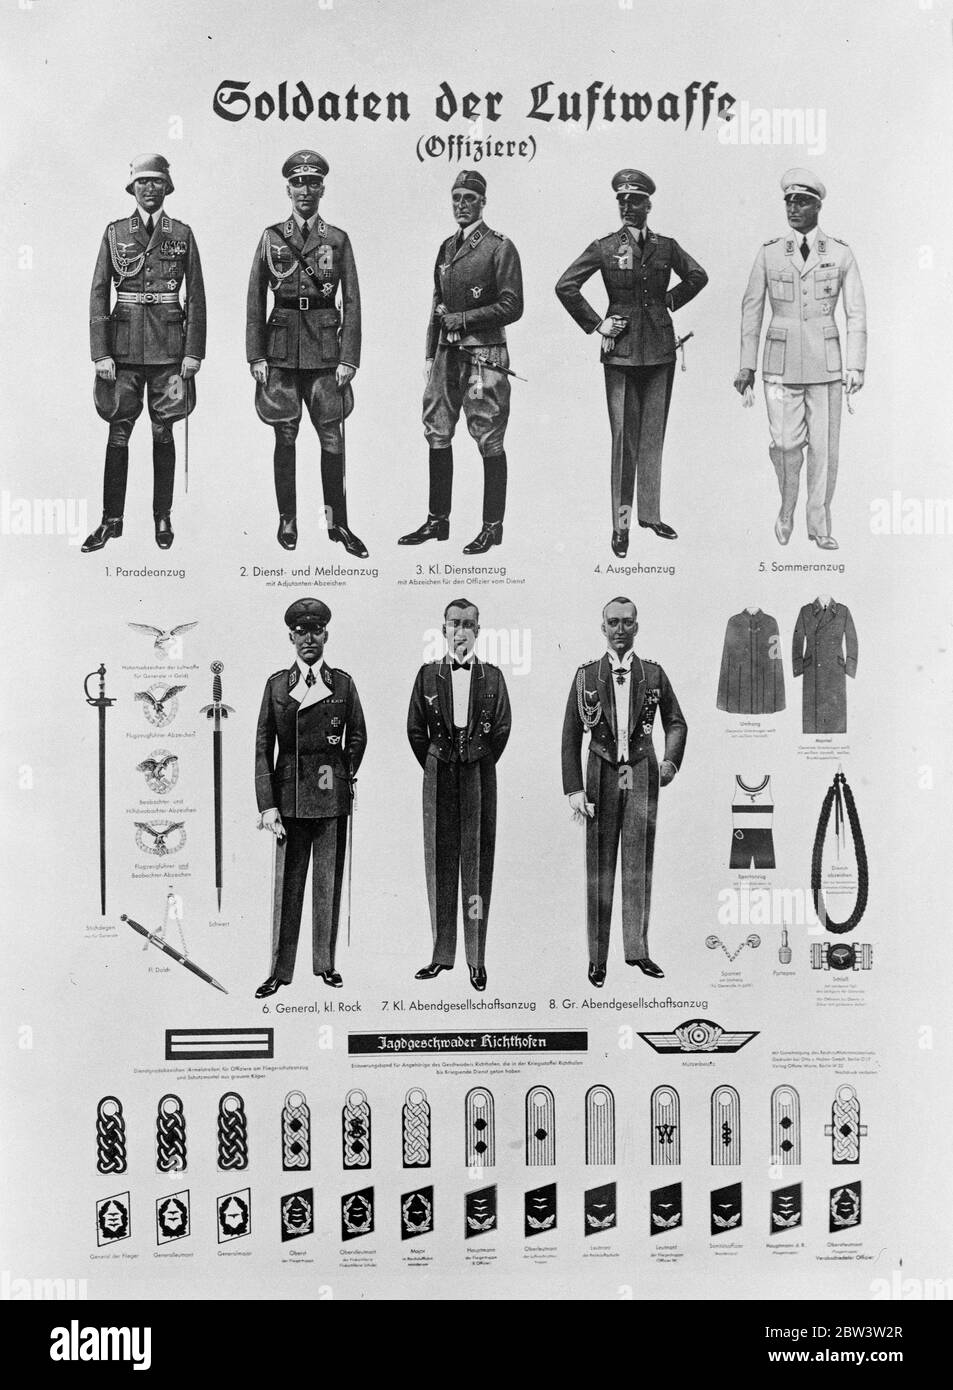 La Germania mostra la sua forza aerea . I poster vengono distribuiti in tutto il paese illustrando le varie uniformi indossate dagli ufficiali e dalle insegne . 8 agosto 1935 Foto Stock